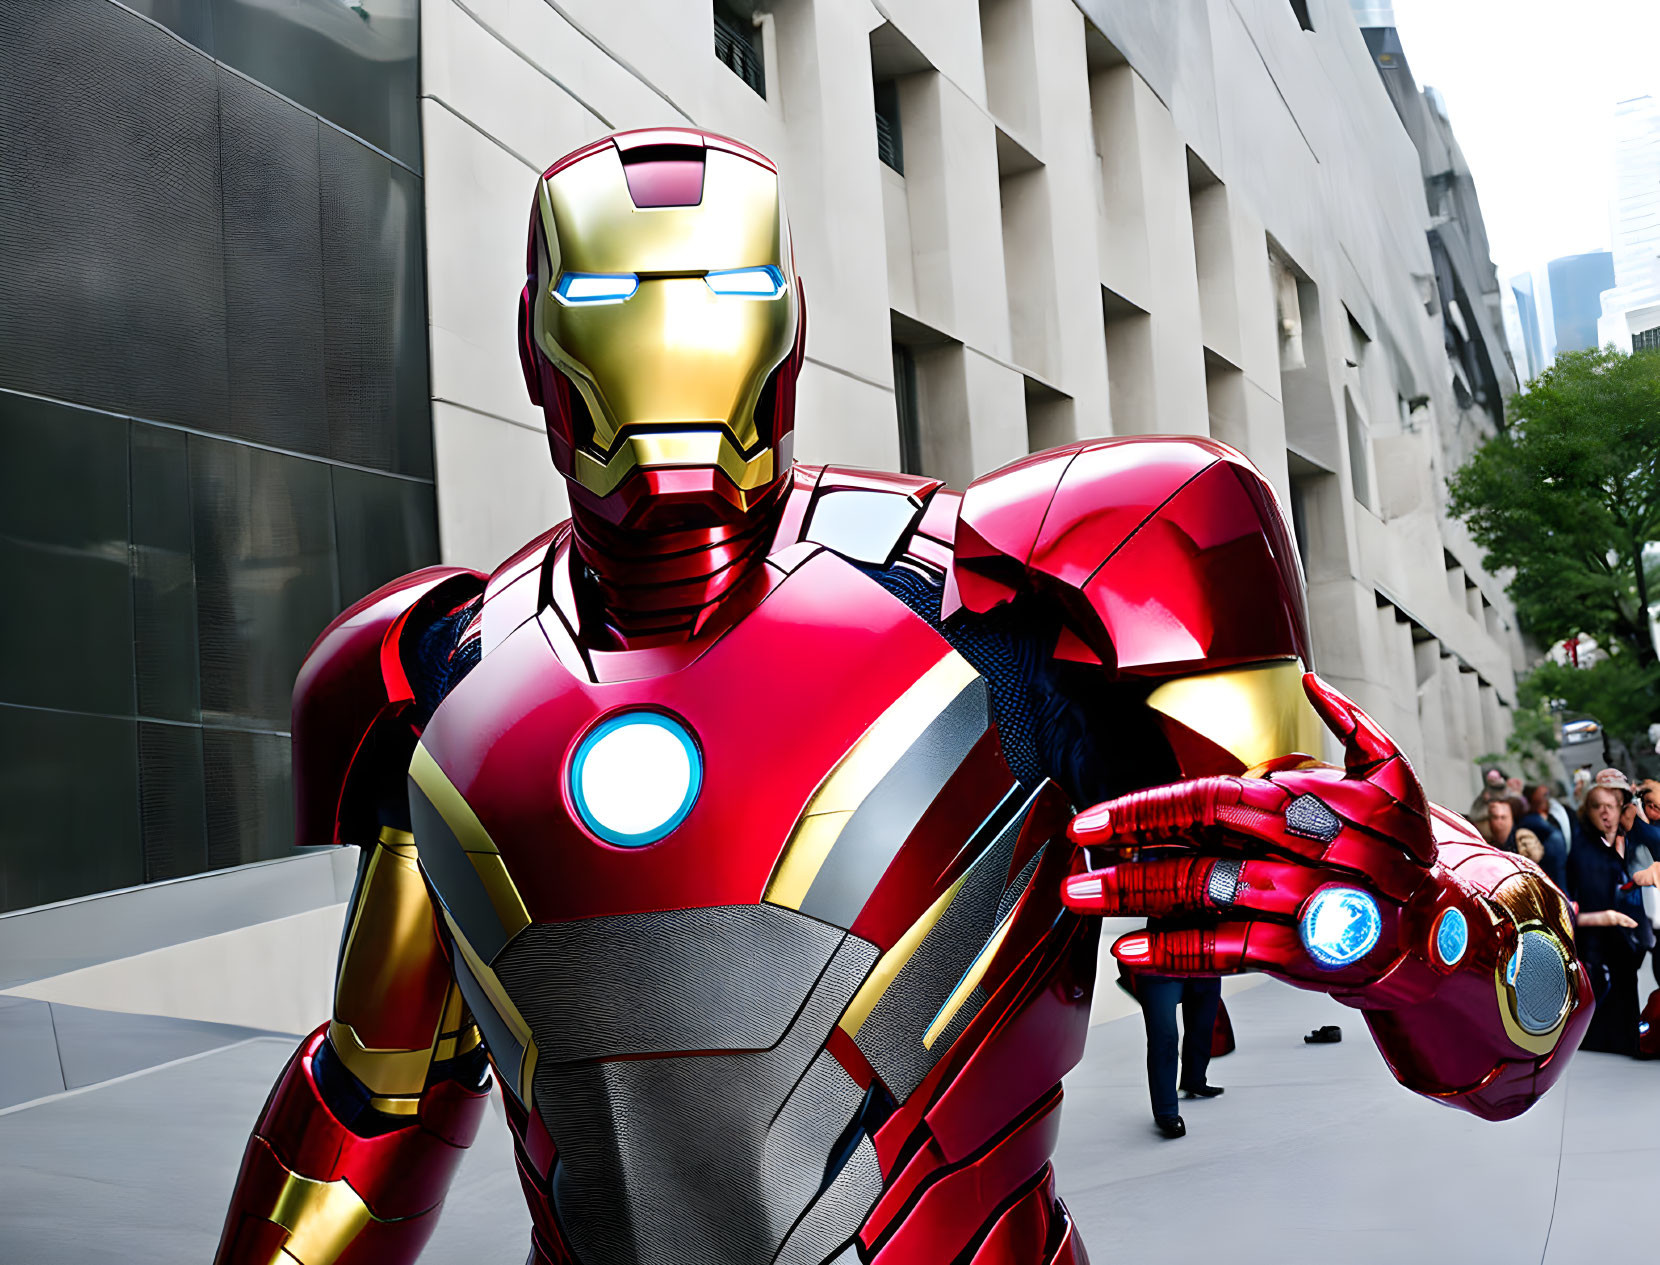 POV: Iron Man takes around town